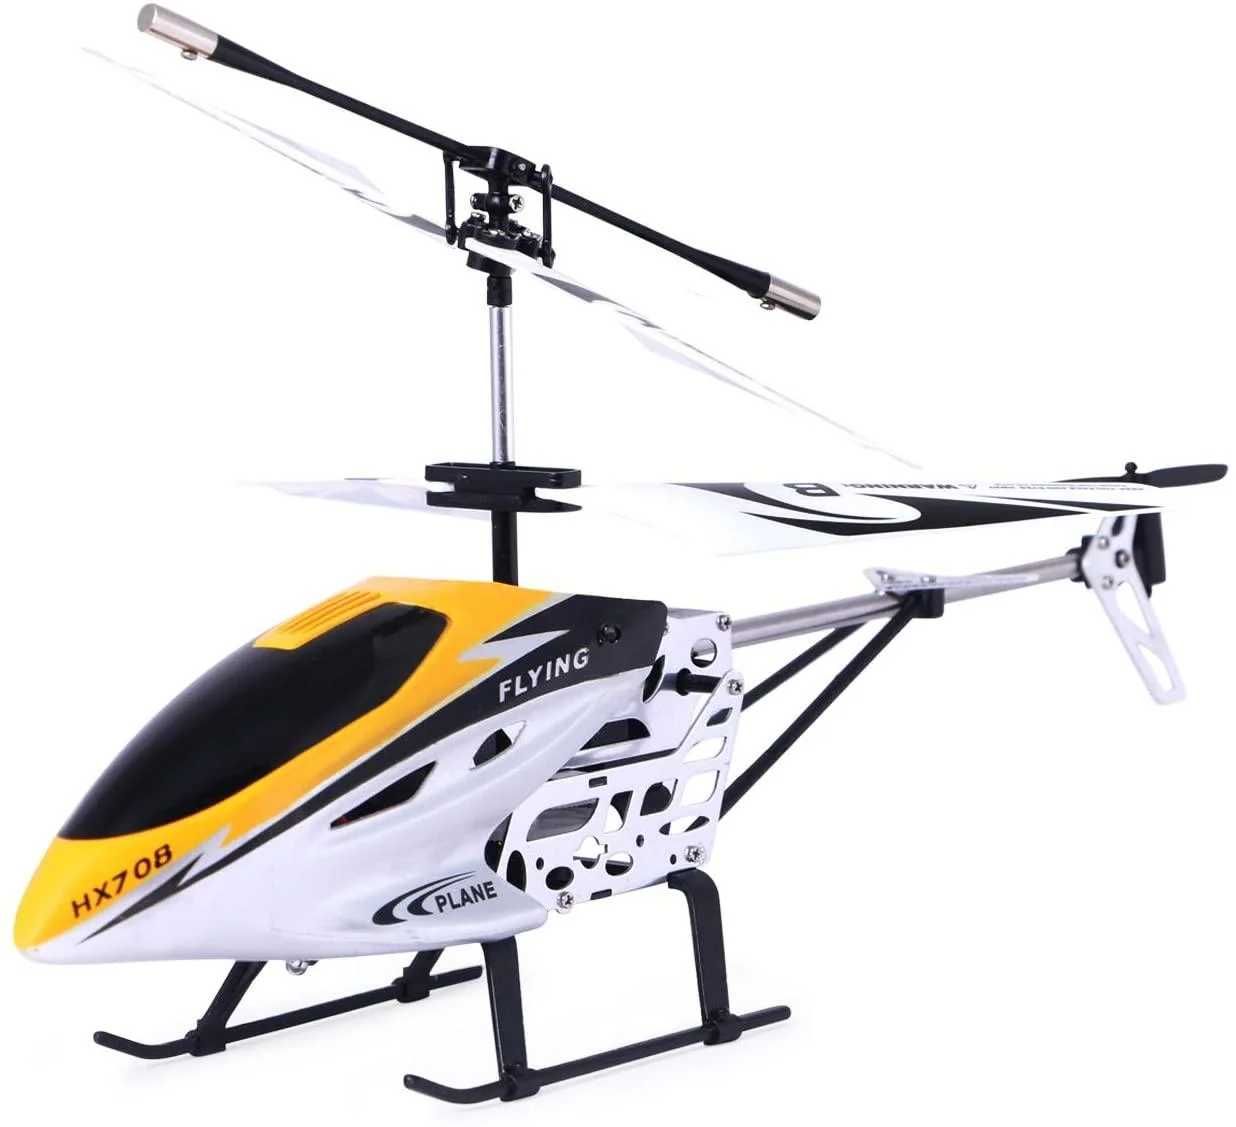 Как купить вертолет на пульте управления? Условия доставки и оплаты